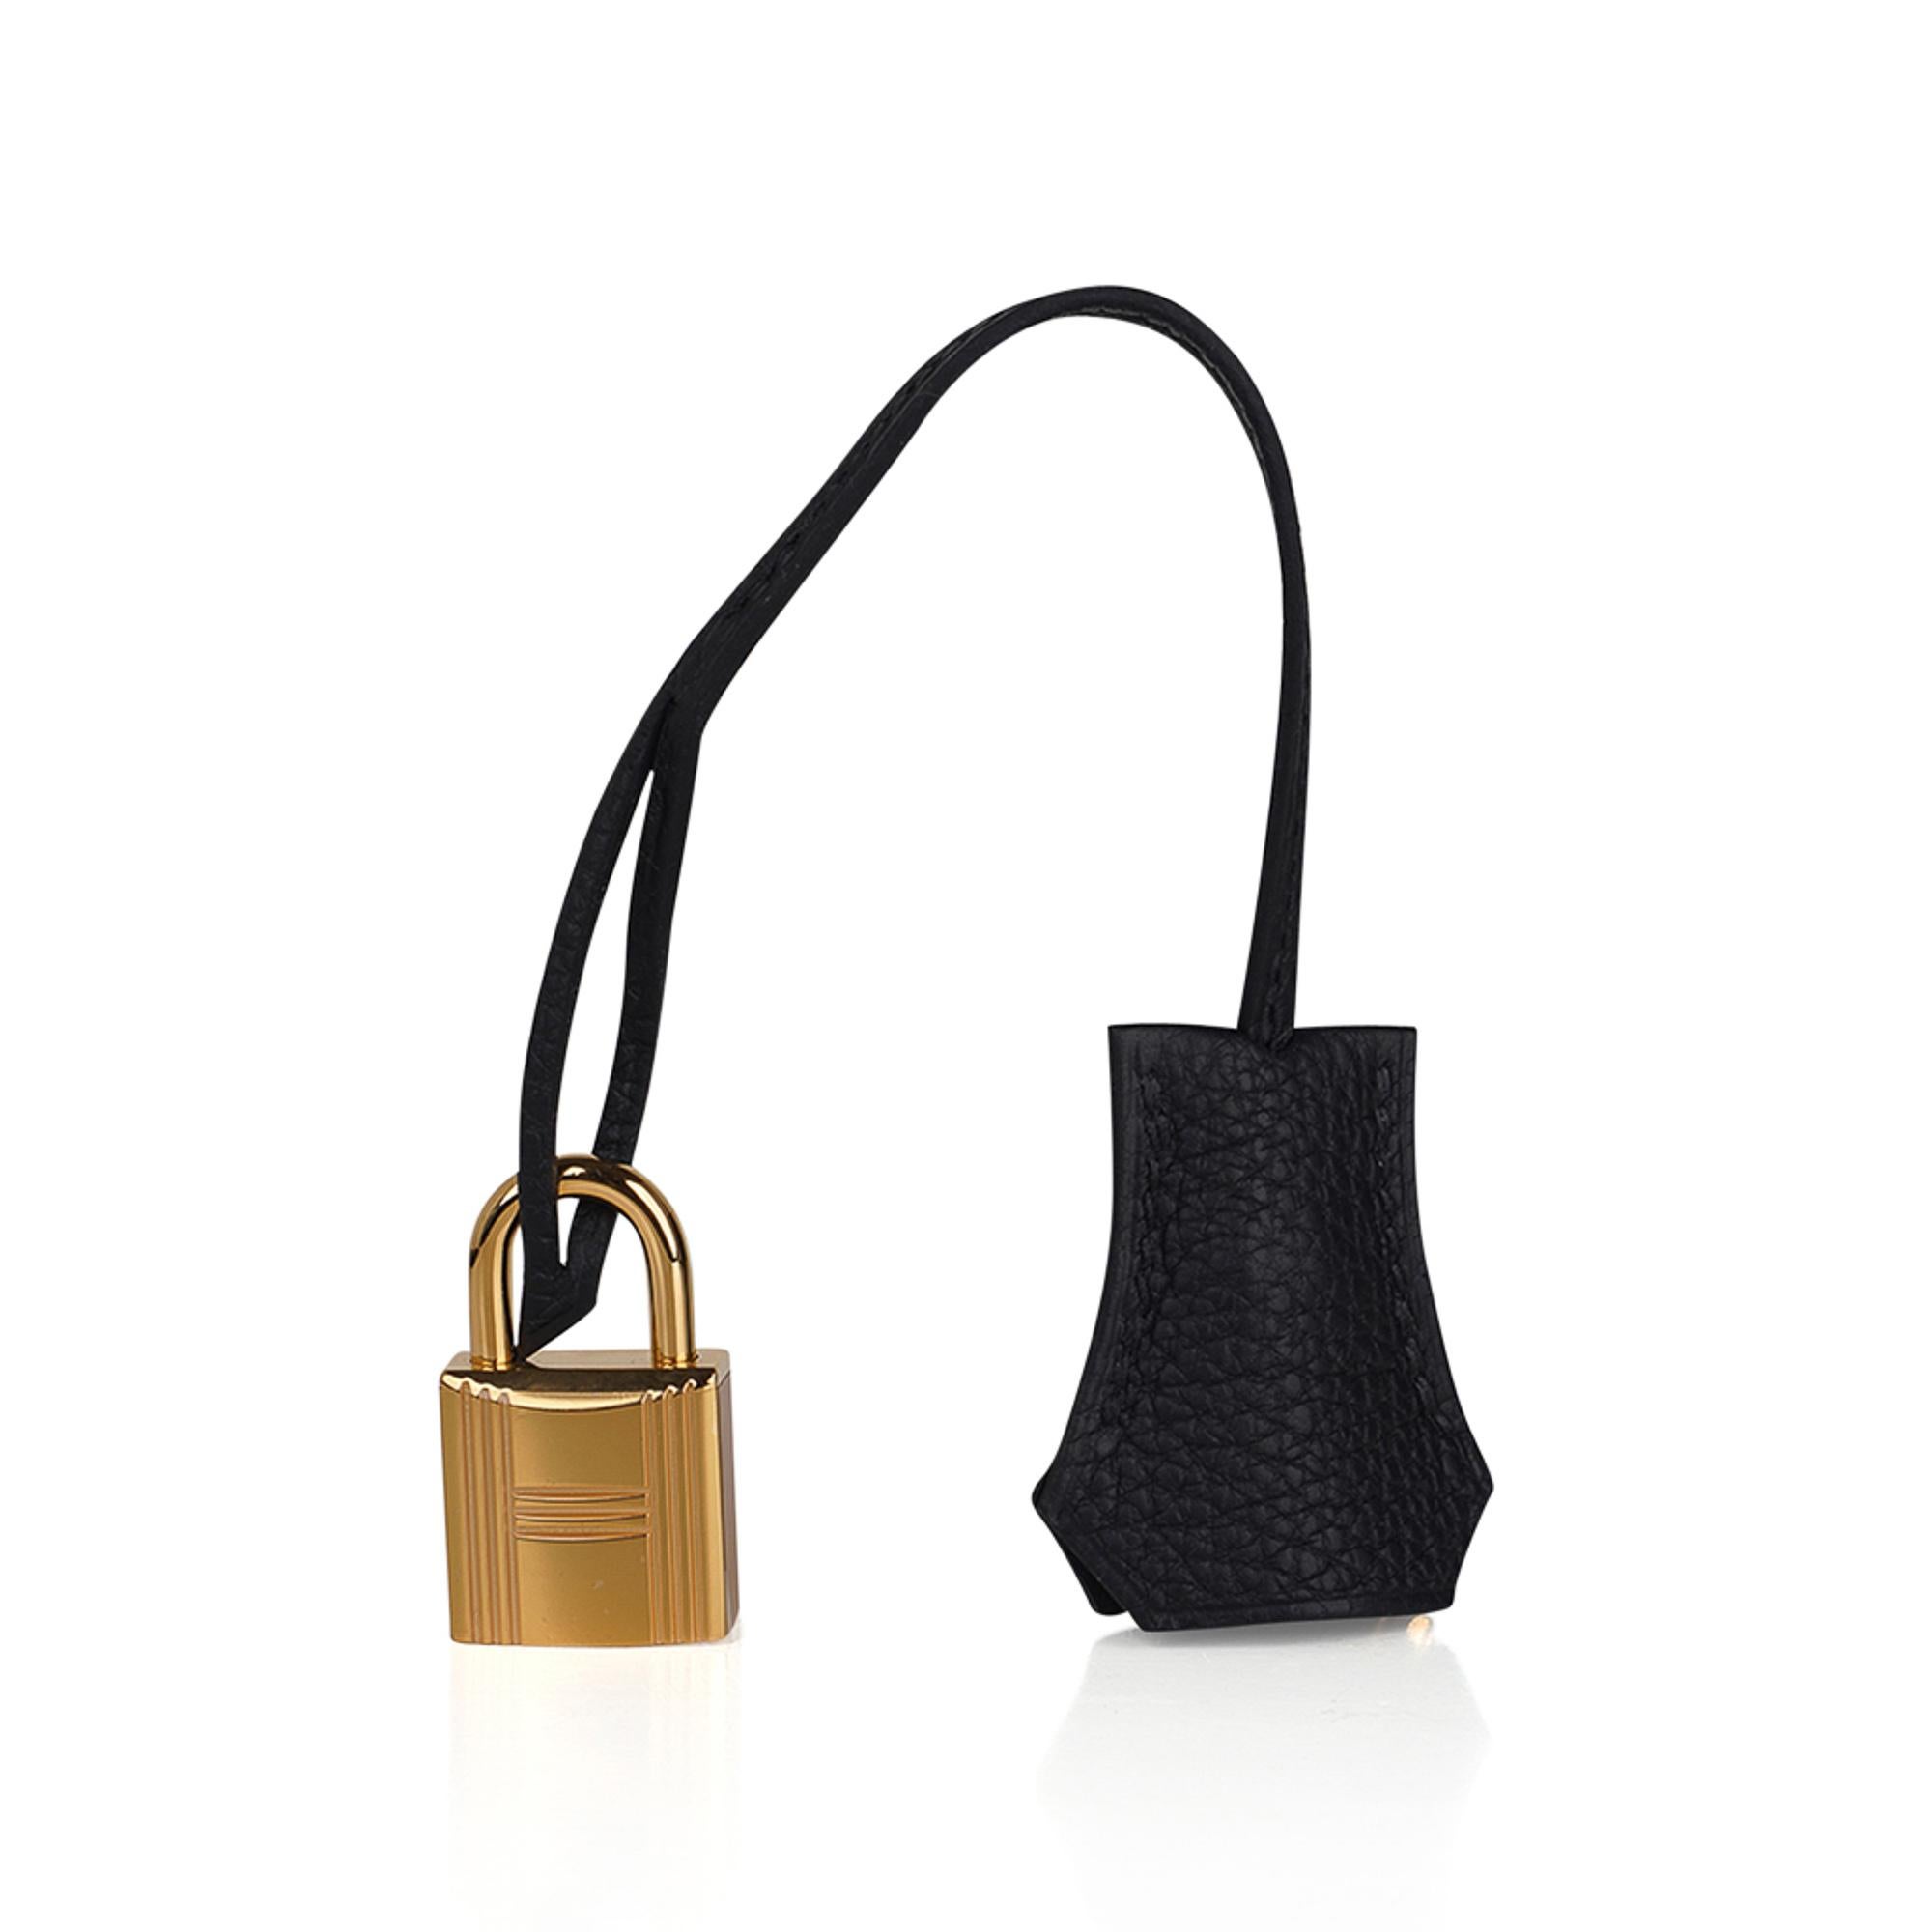  Hermes Birkin 25 Black Bag Togo Leather Gold Hardware  Pour femmes 